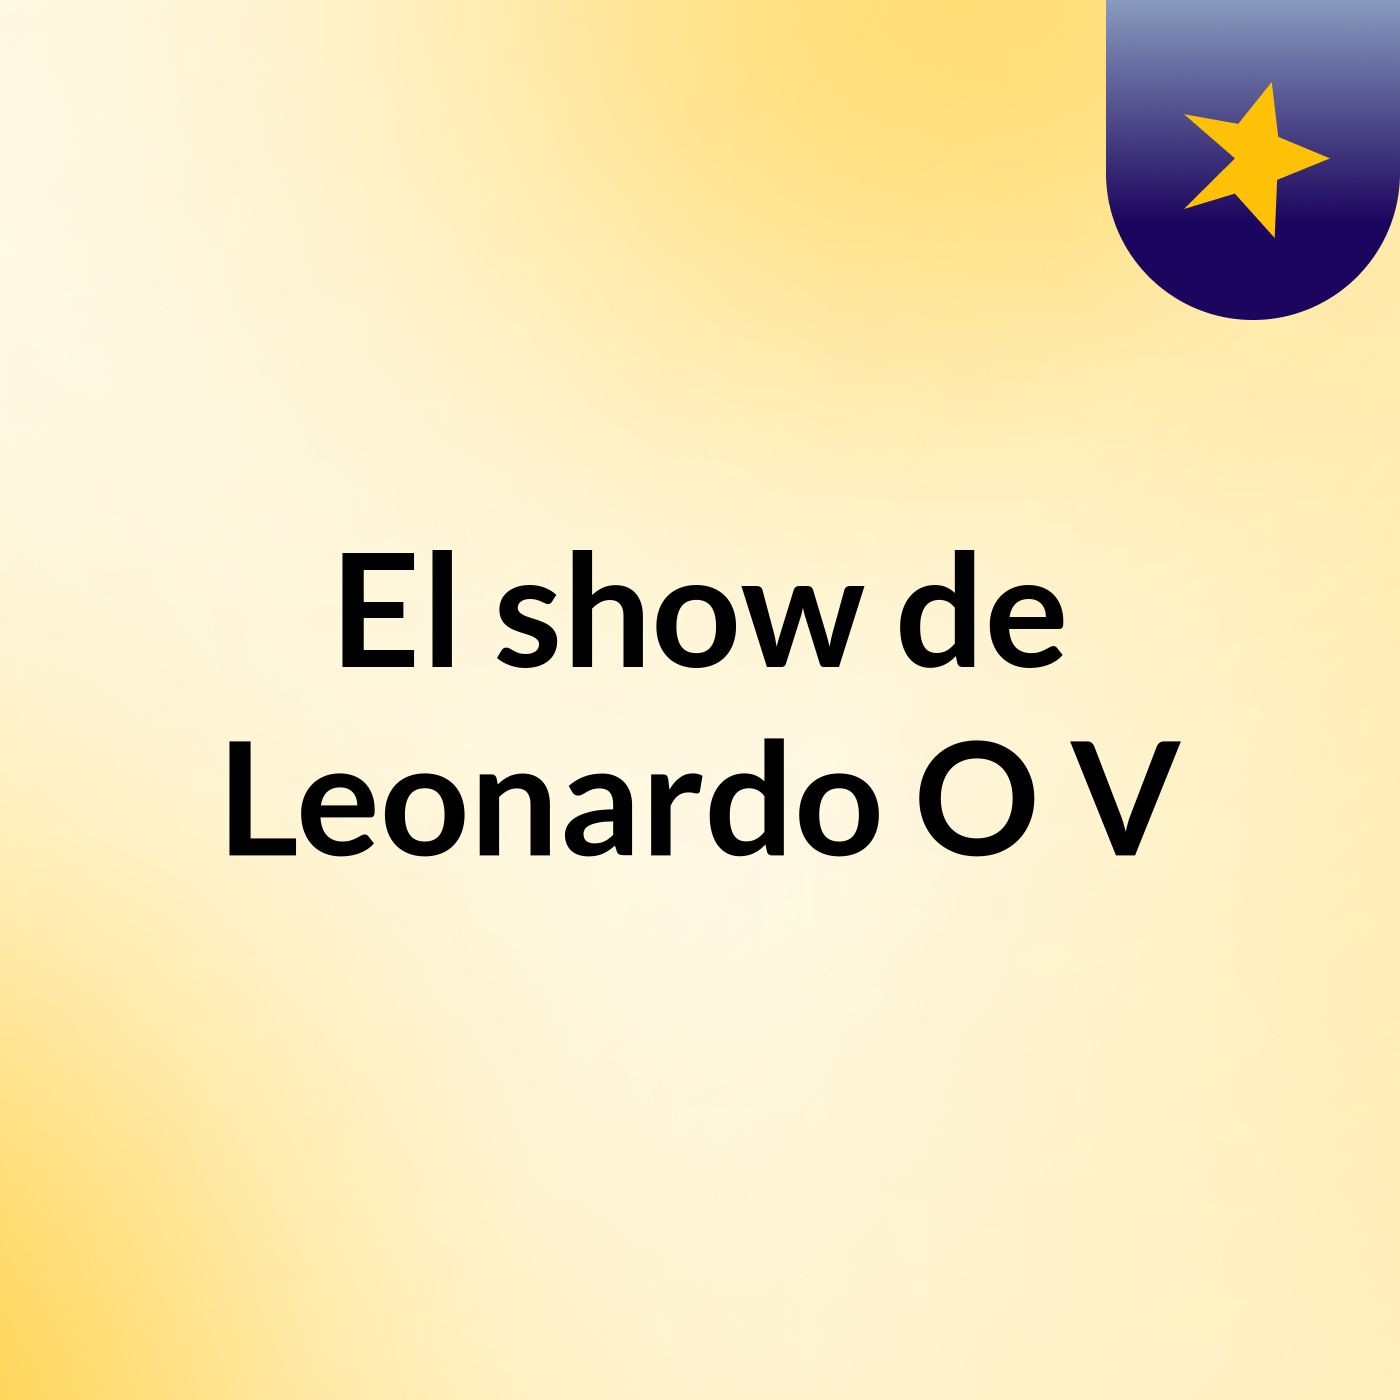 El show de Leonardo O V